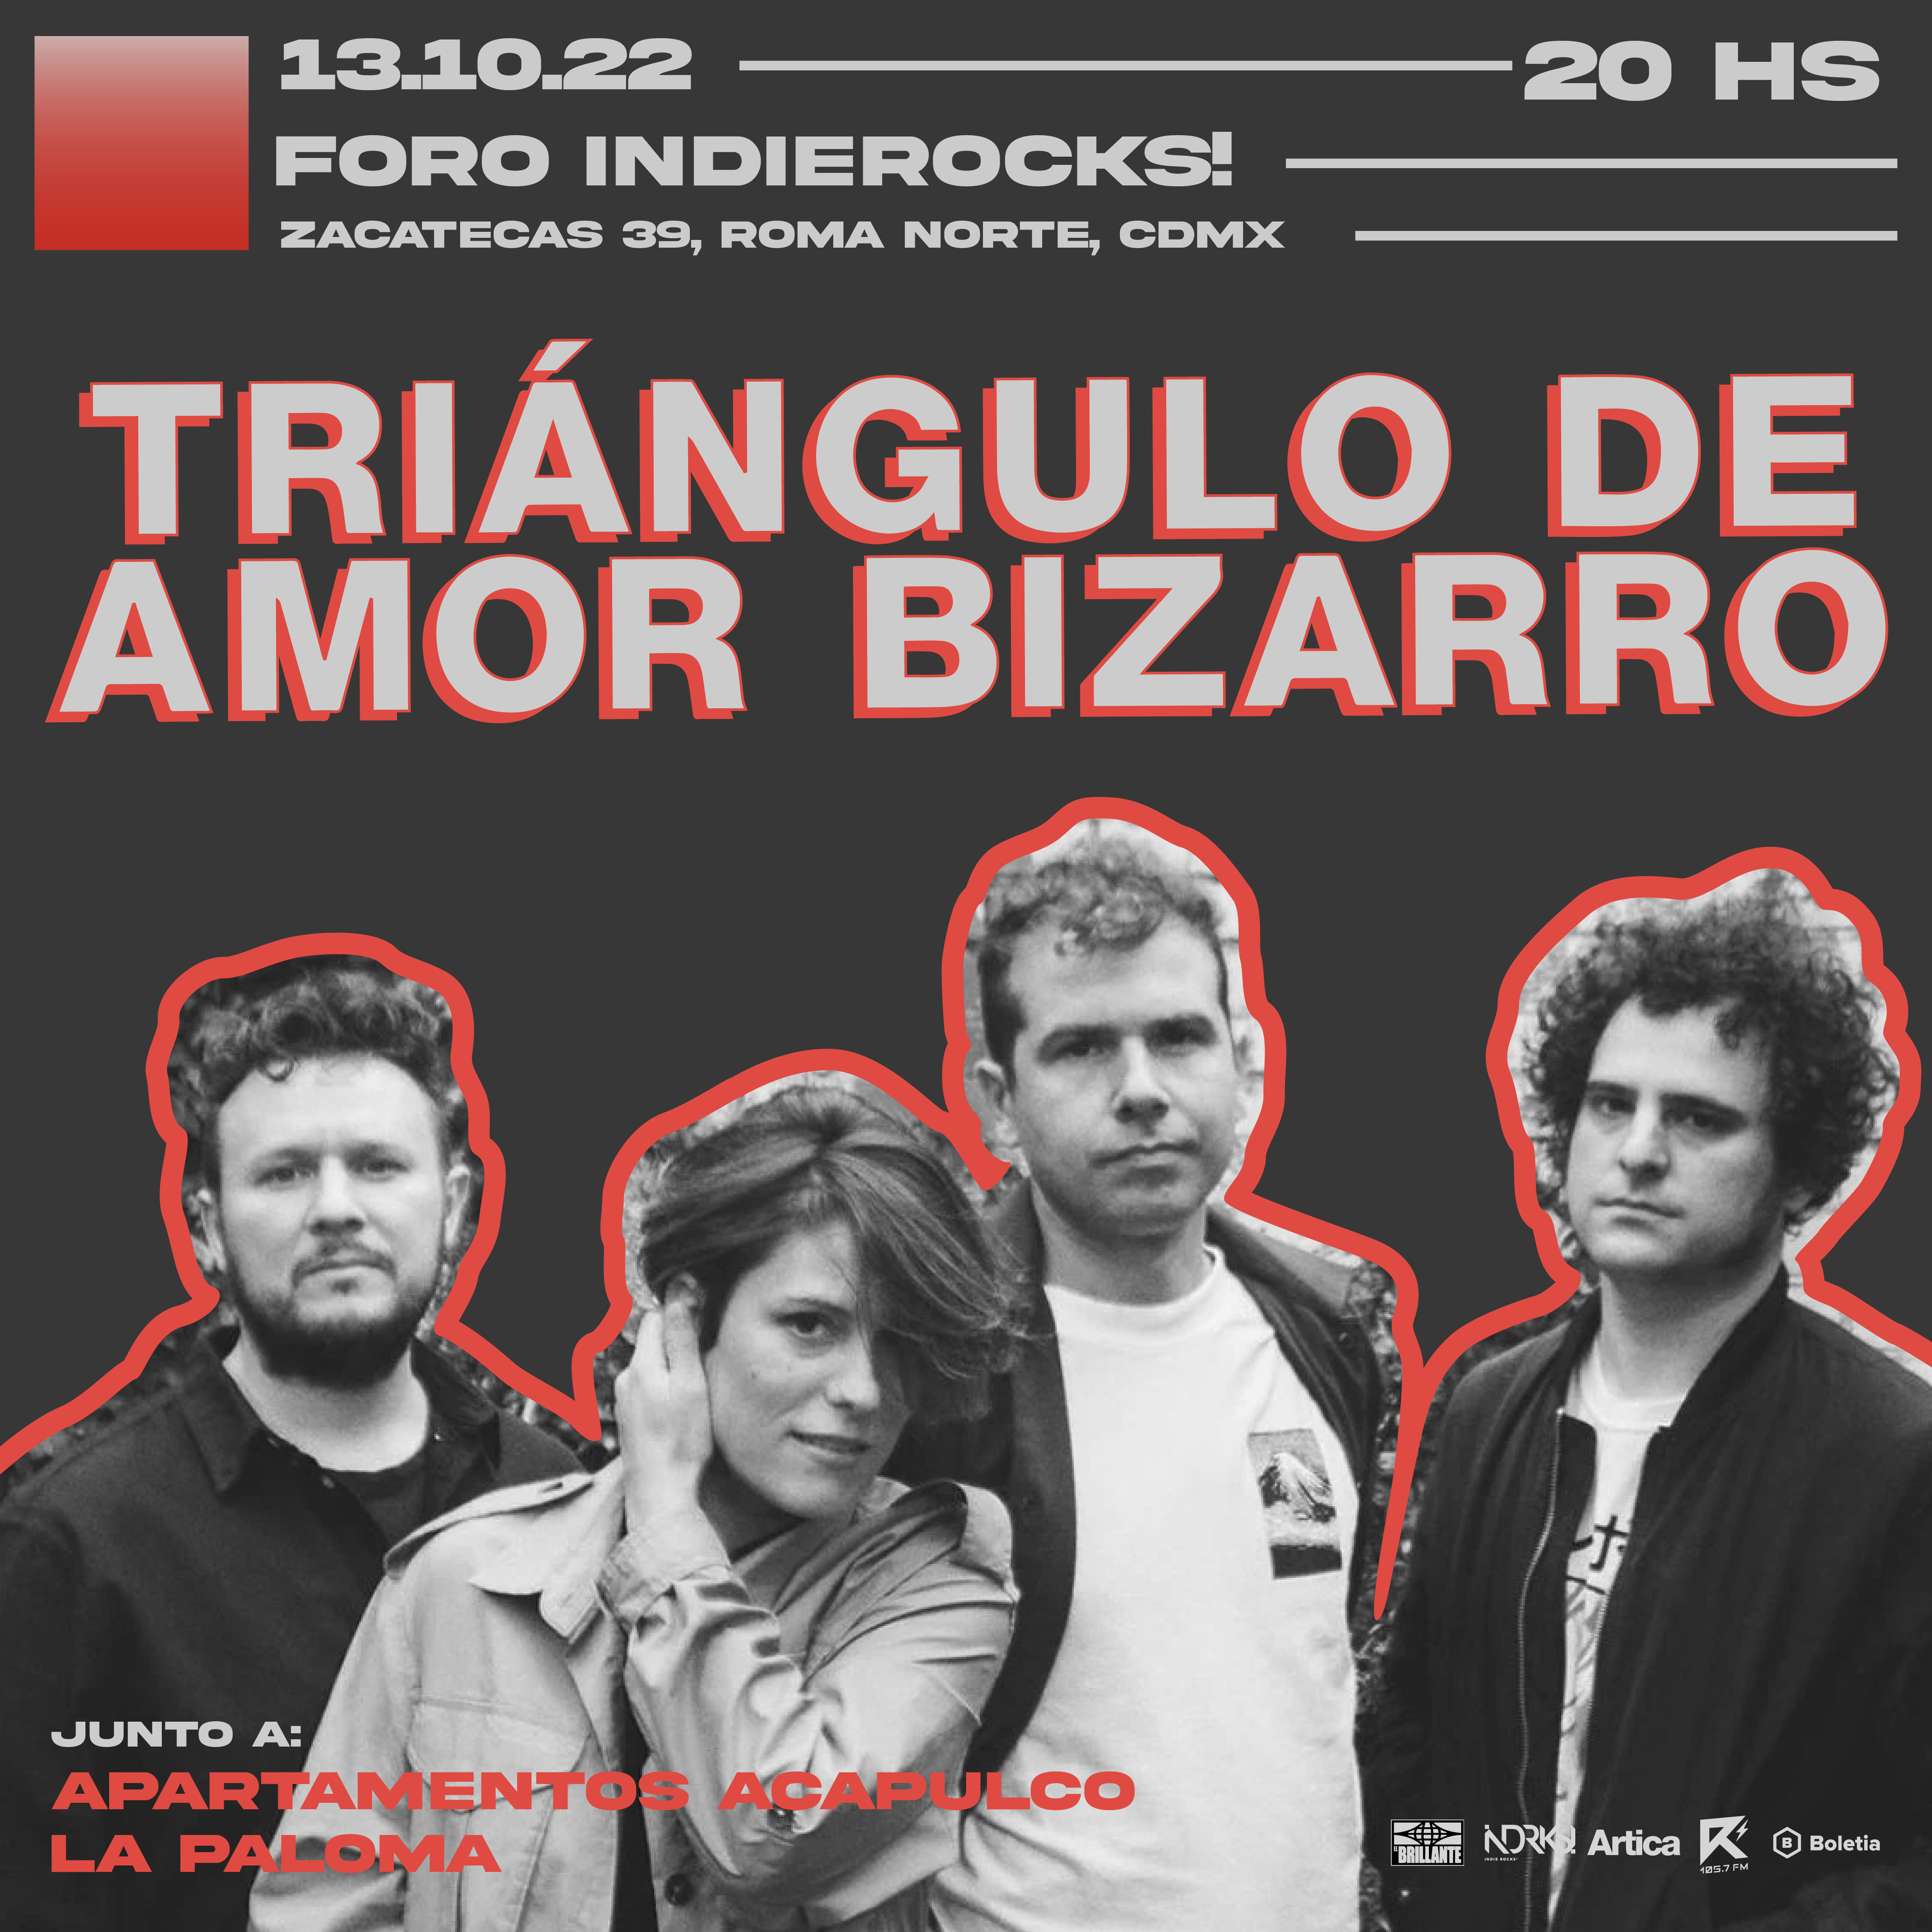 Triángulo de Amor Bizarro llegará al Foro Indie Rocks!